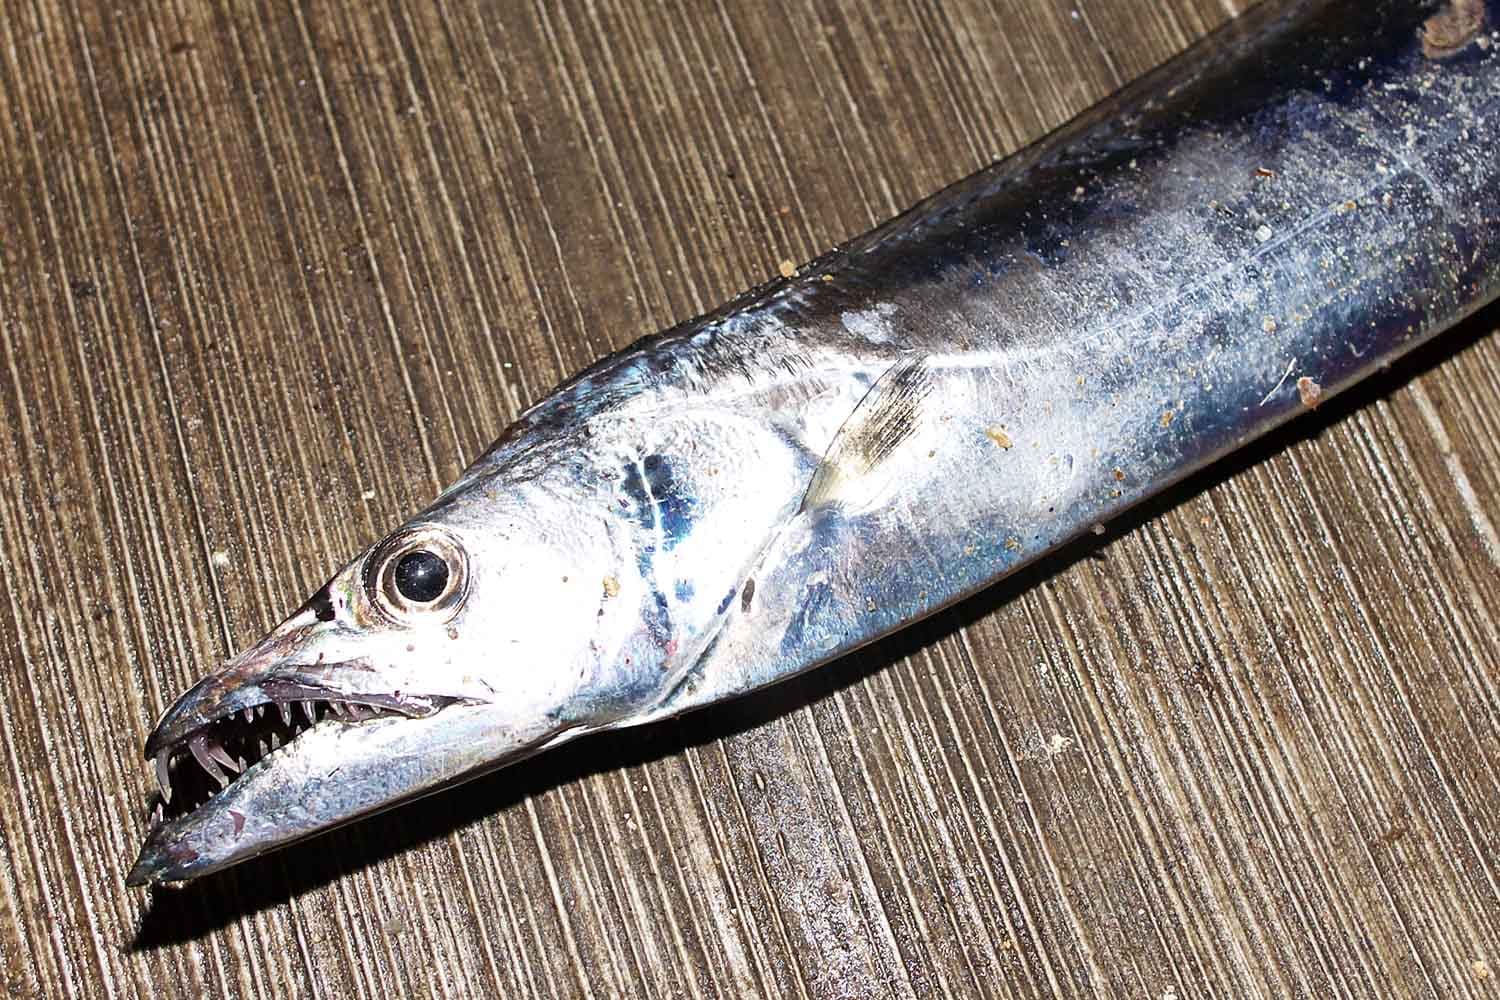 タチウオ釣りを成功に導くトラブル回避法と餌使いのコツを解説